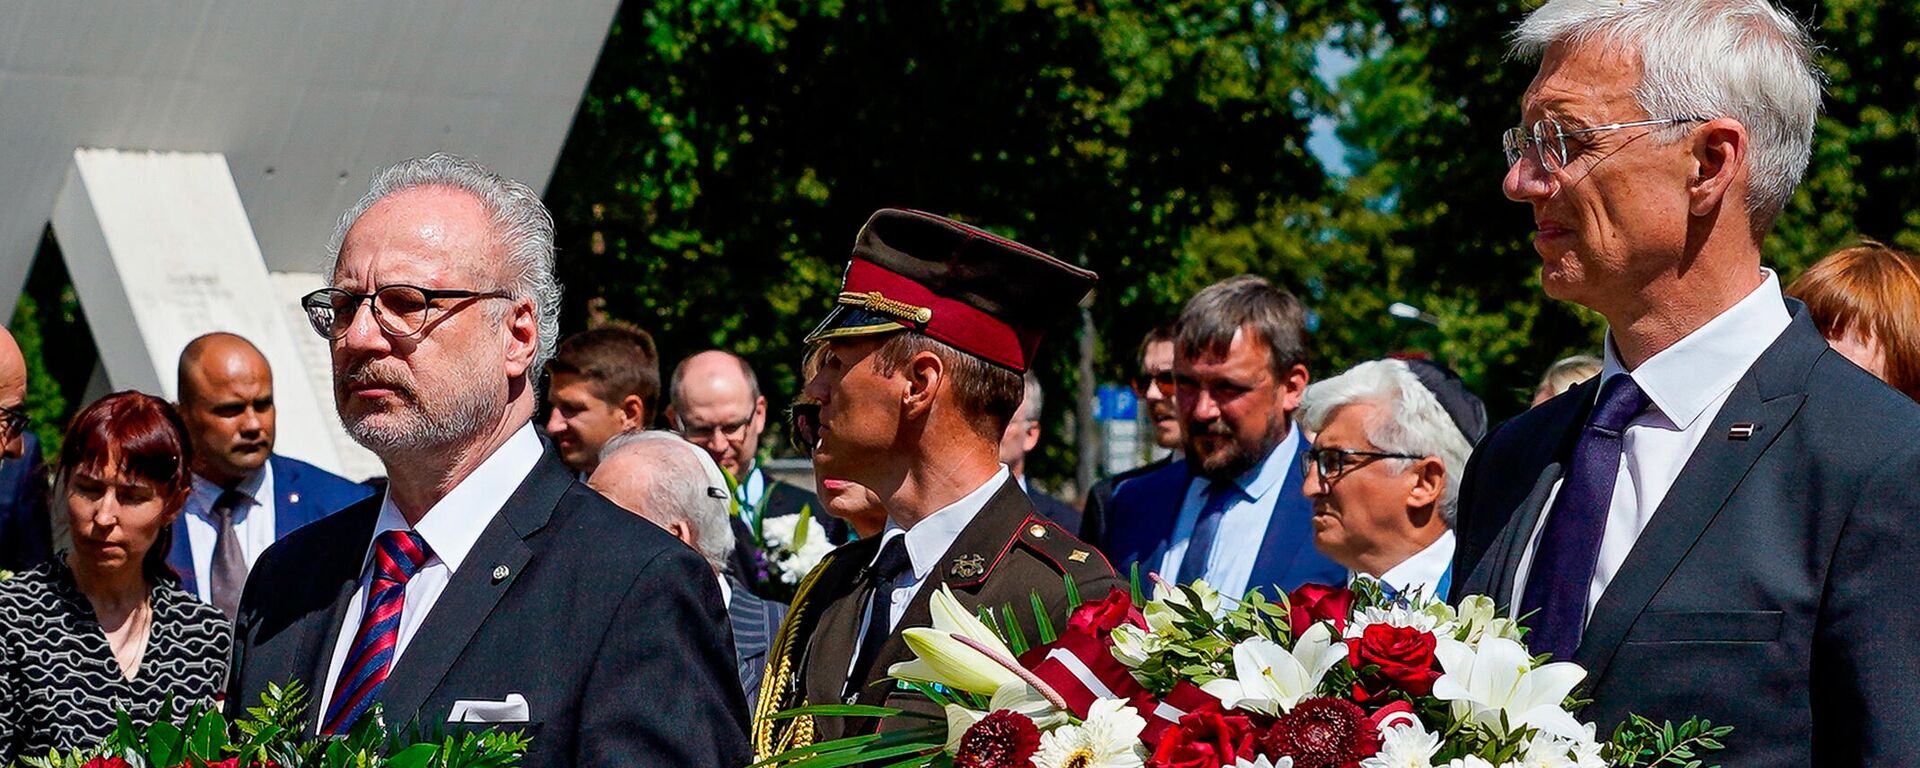 Президент Латвии Эгилс Левитс(слева) и премьер-министр Латвии Кришьянис Кариньш(справа) - Sputnik Latvija, 1920, 20.07.2021